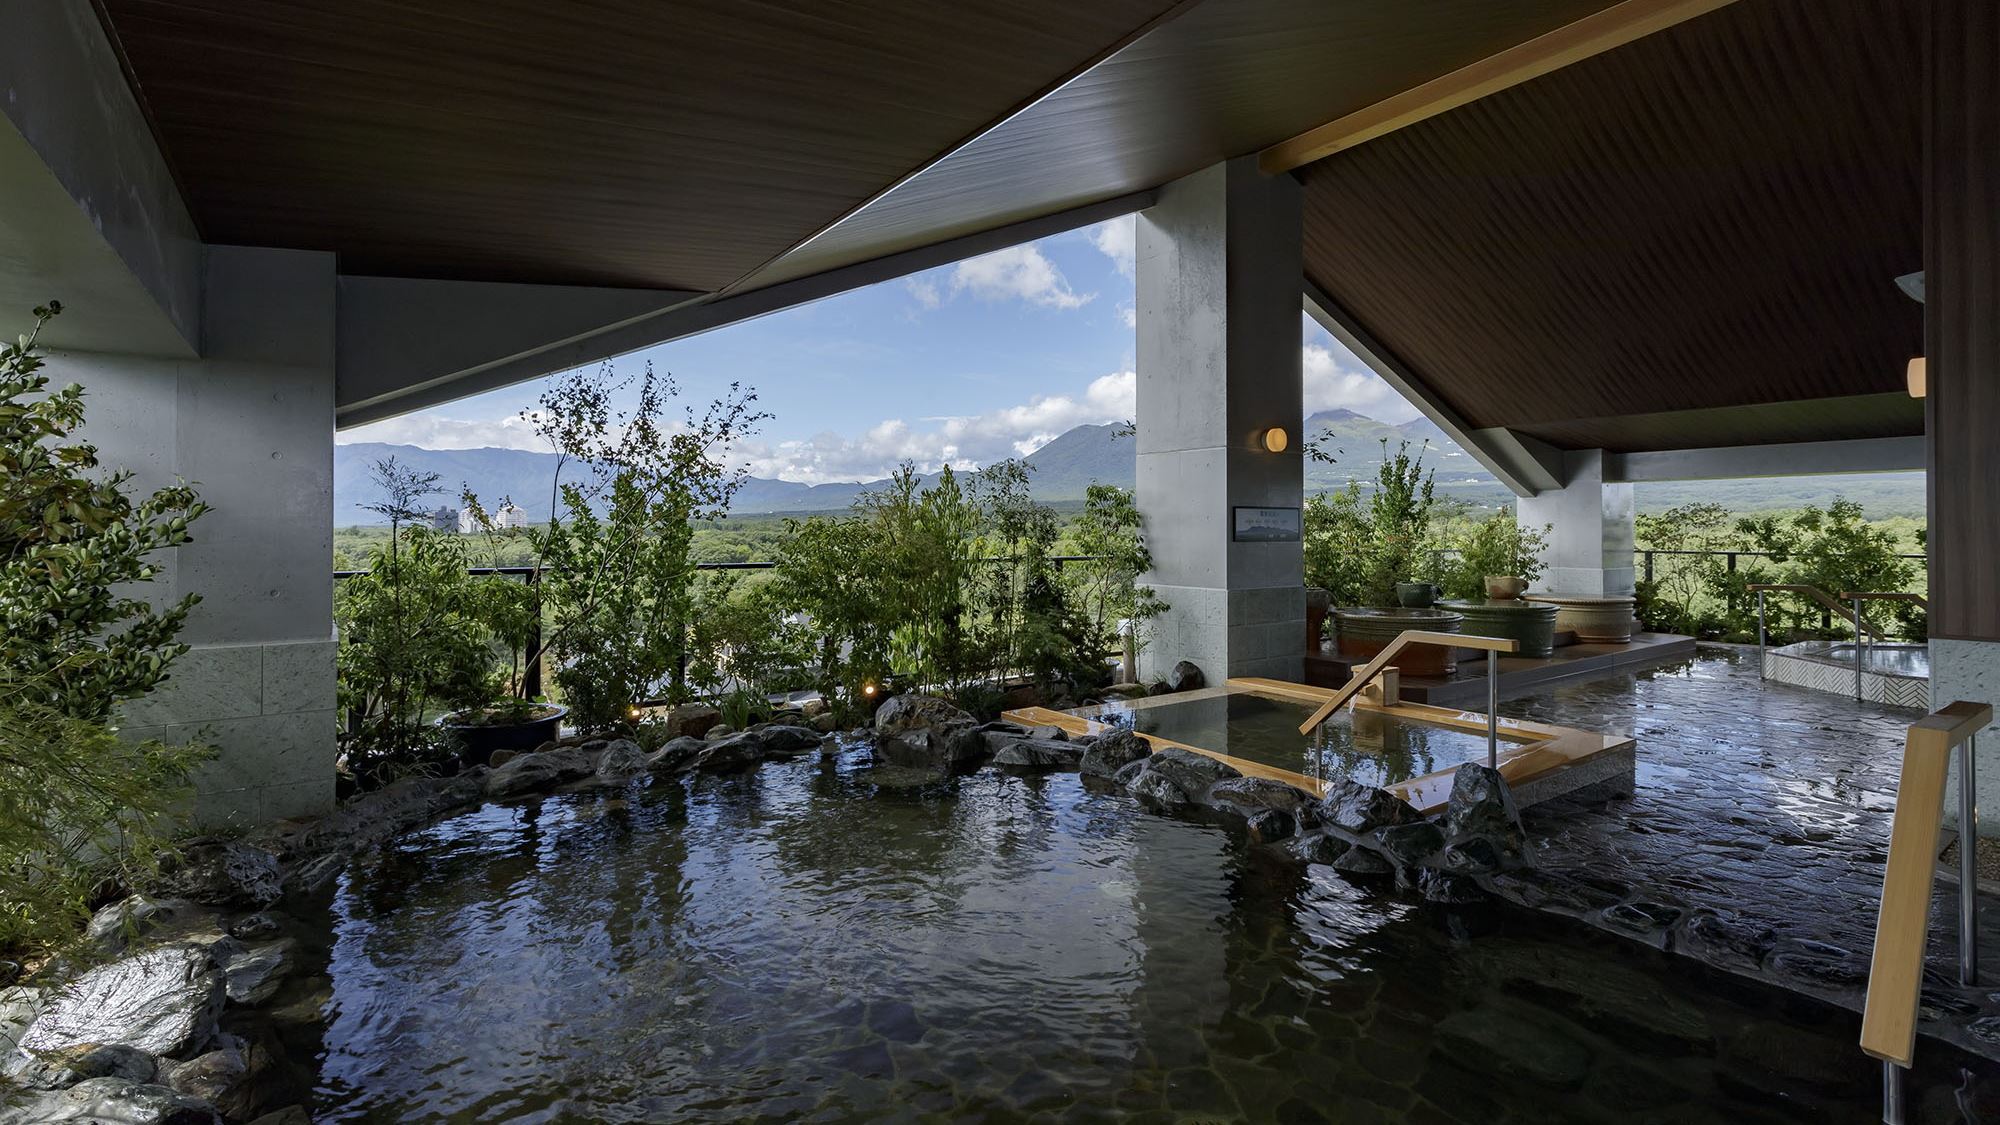  【最上階展望露天風呂】那須の自然に溶け込み、風景と調和する露天風呂